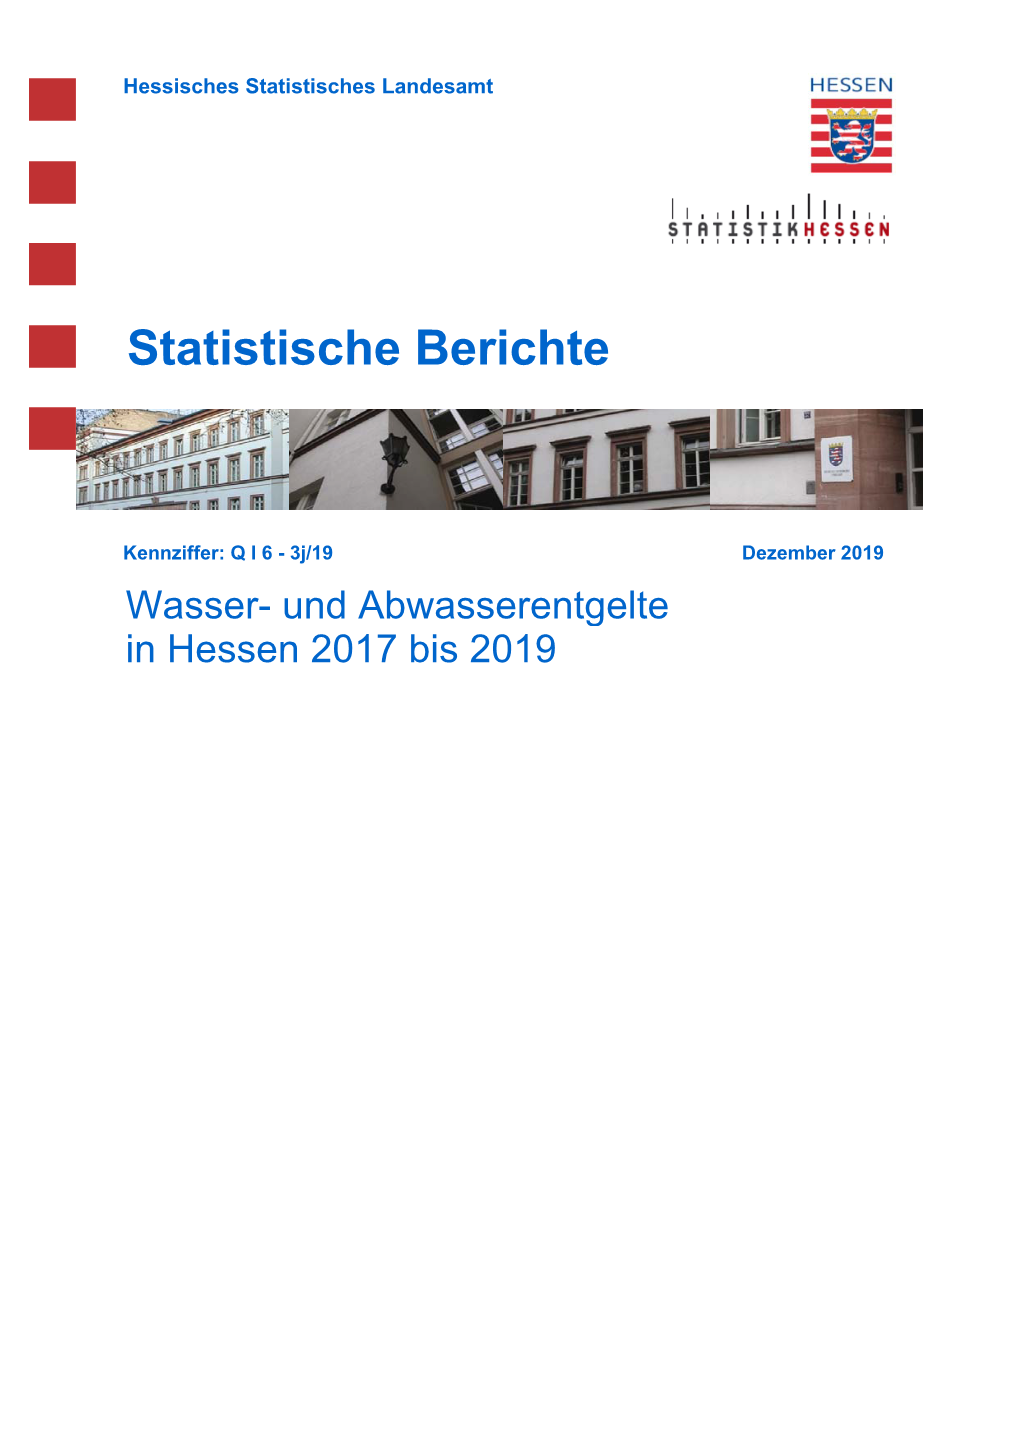 Wasser- Und Abwasserentgelte in Hessen 2017 Bis 2019 Hessisches Statistisches Landesamt, Wiesbaden